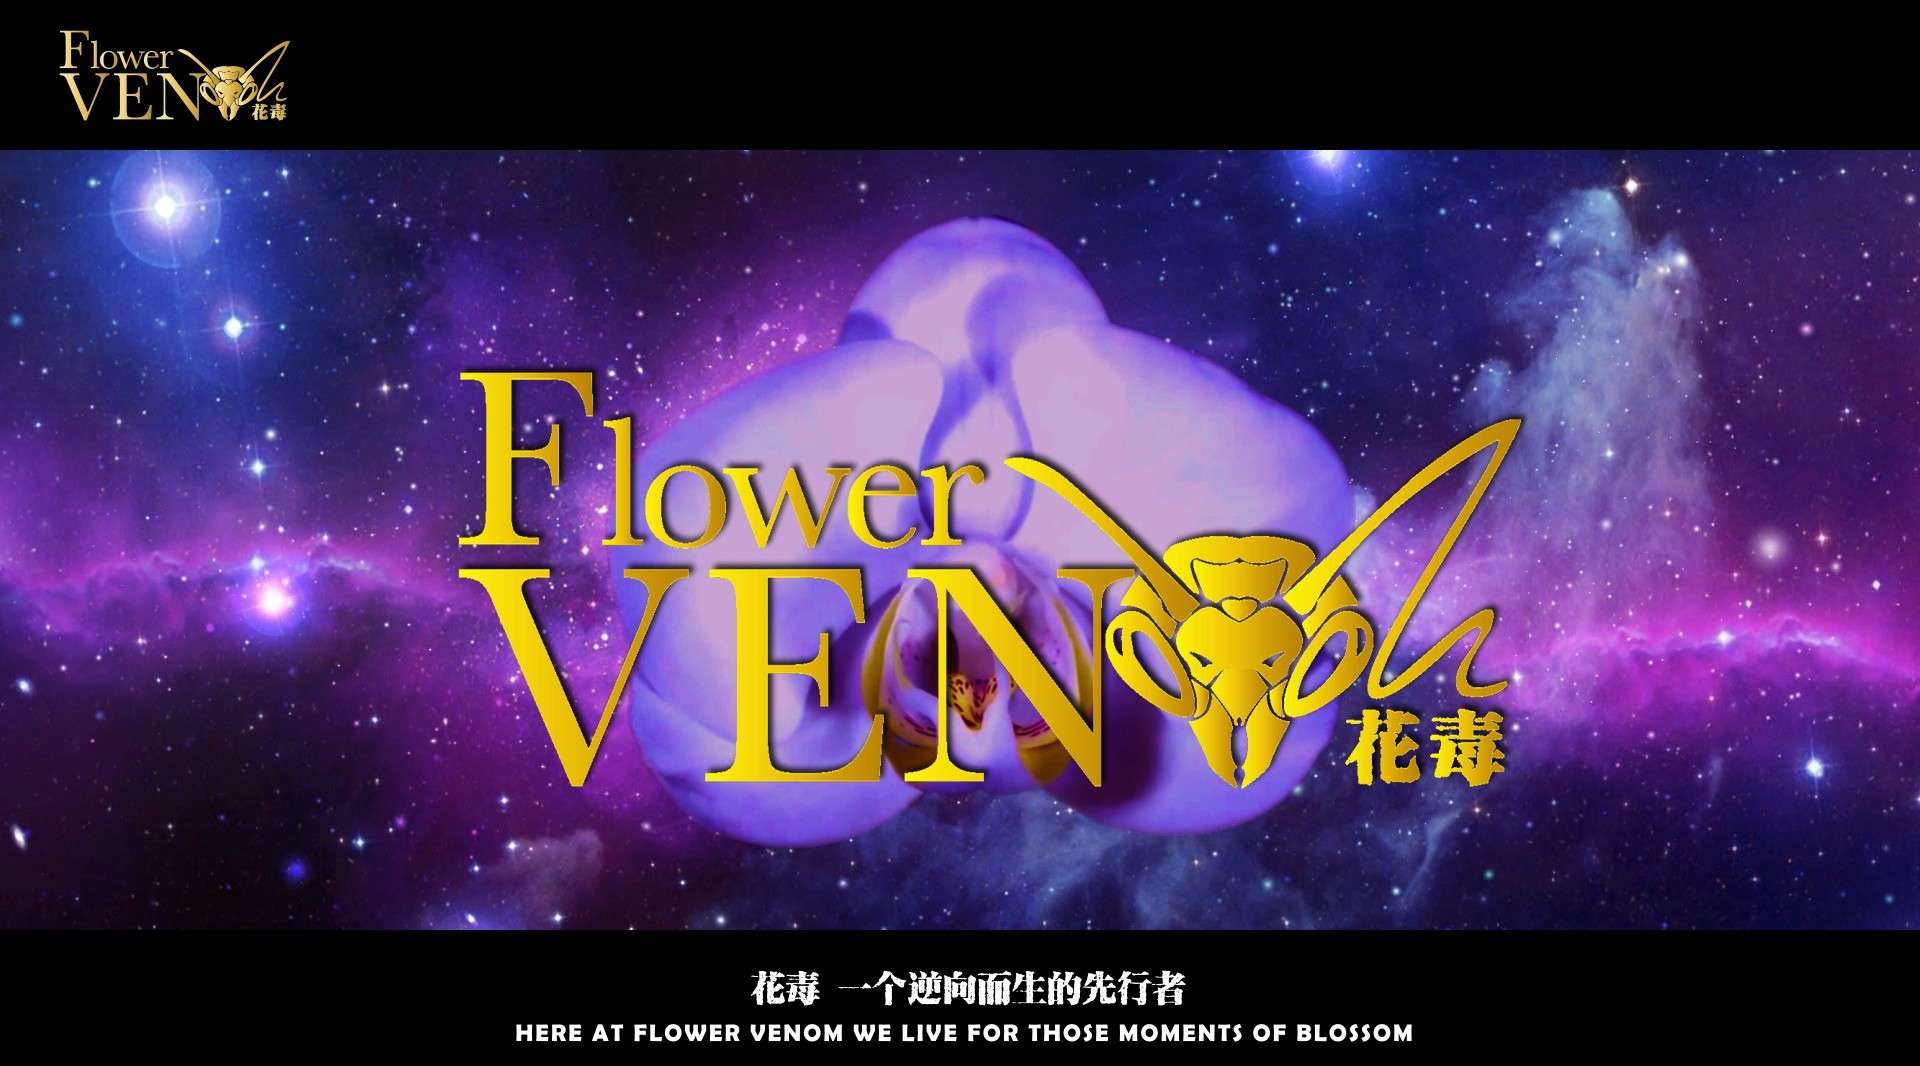 大连花毒花卉艺术有限公司官方概念宣传片-中文版